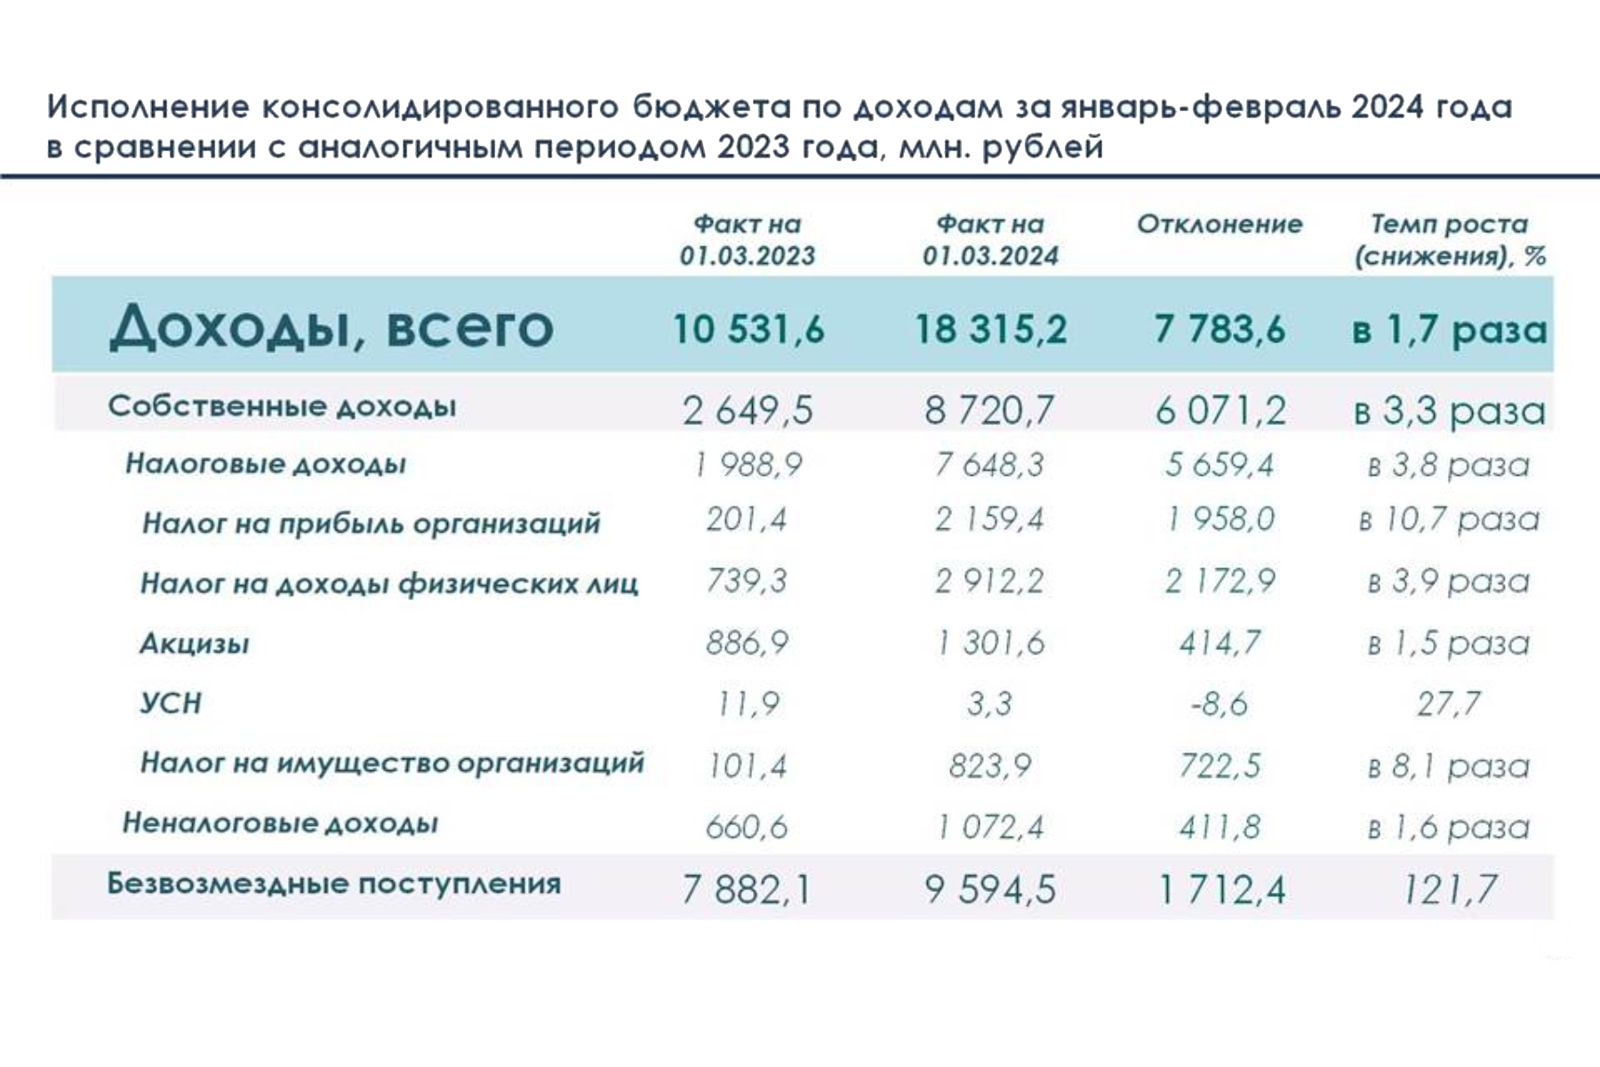 Налоговые поступления в бюджет Чувашской Республики выросли в 3,8 раза